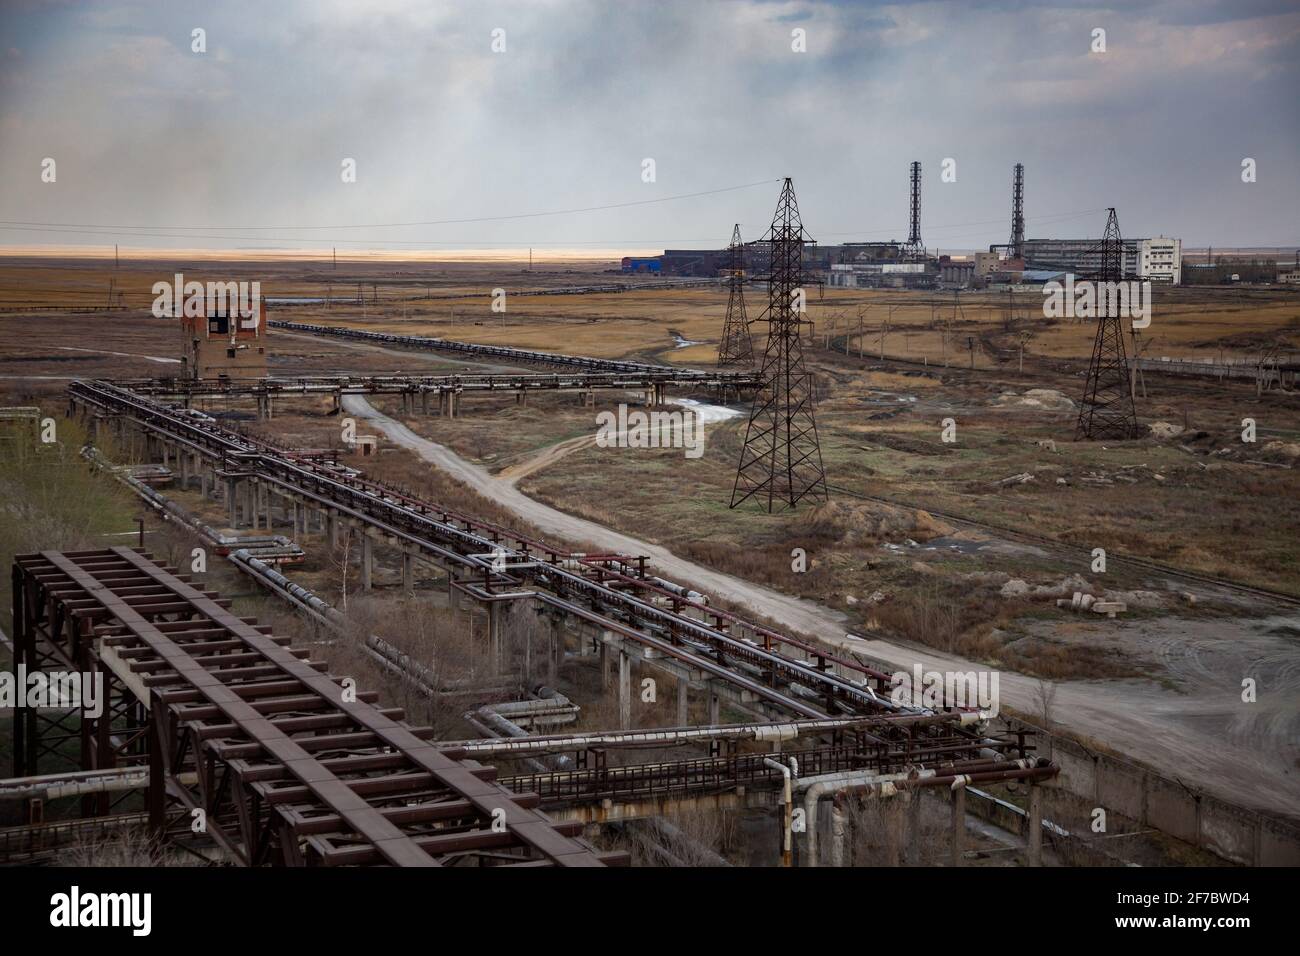 Veraltete sowjetische Bergbau- und Verarbeitungsfabrik. Panoramaansicht. Rohrleitungen an der Vorderseite. Rauch stapelt sich oh Horizont. Stockfoto